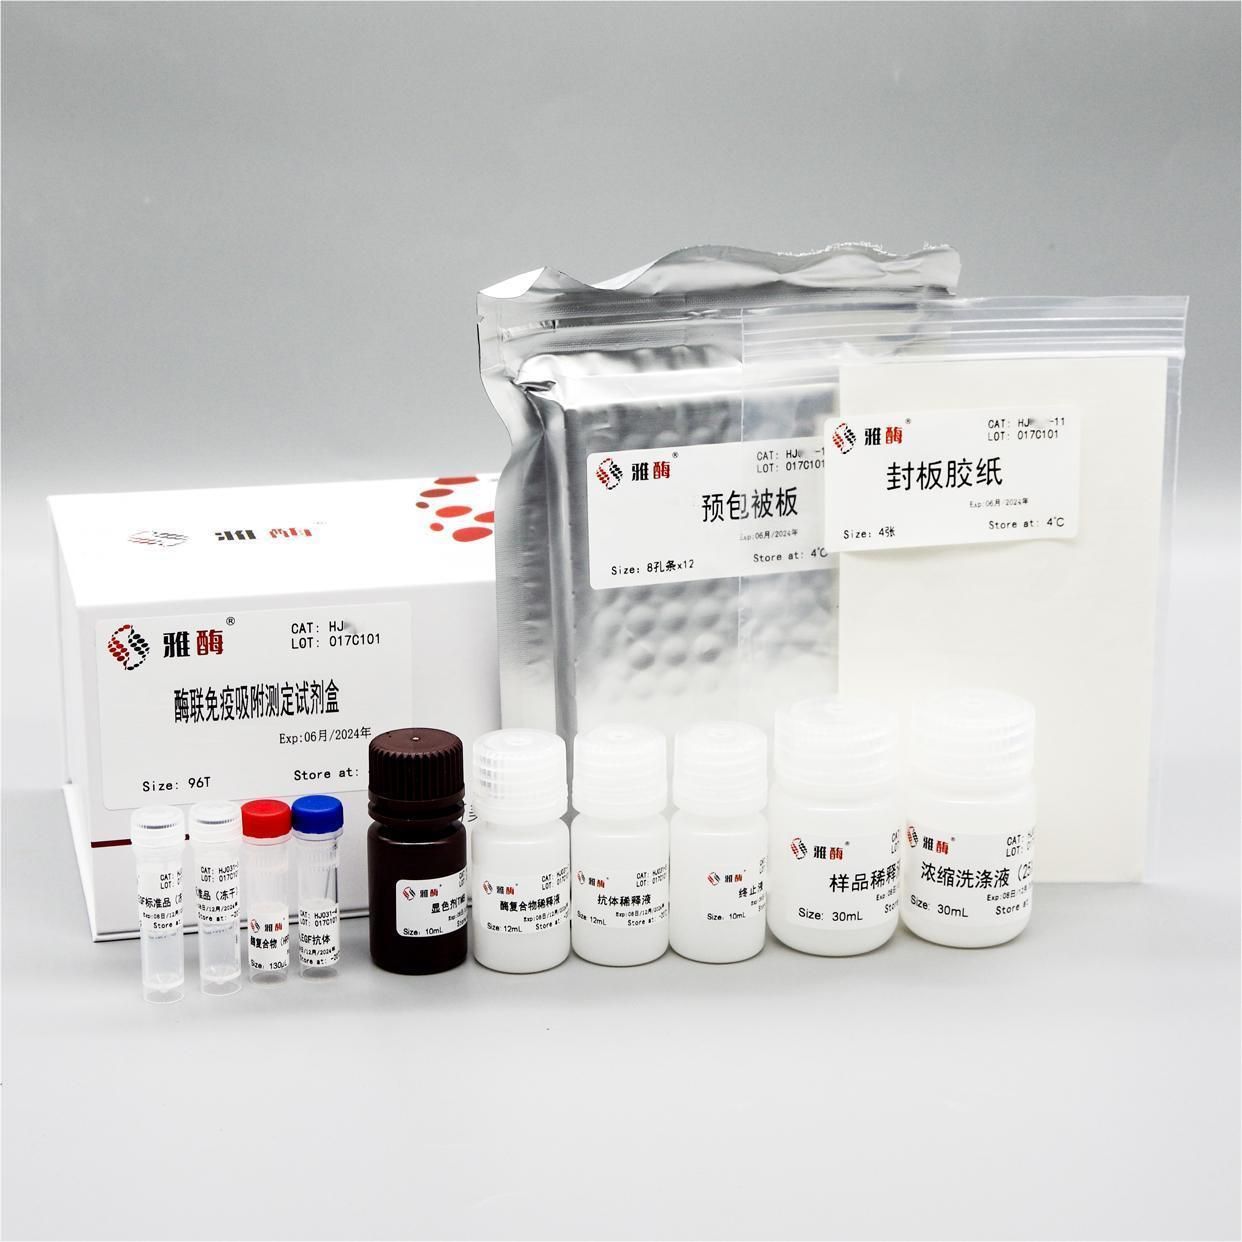 HJ005 Human Angiopoietins/Ang-2 ELISA Kit